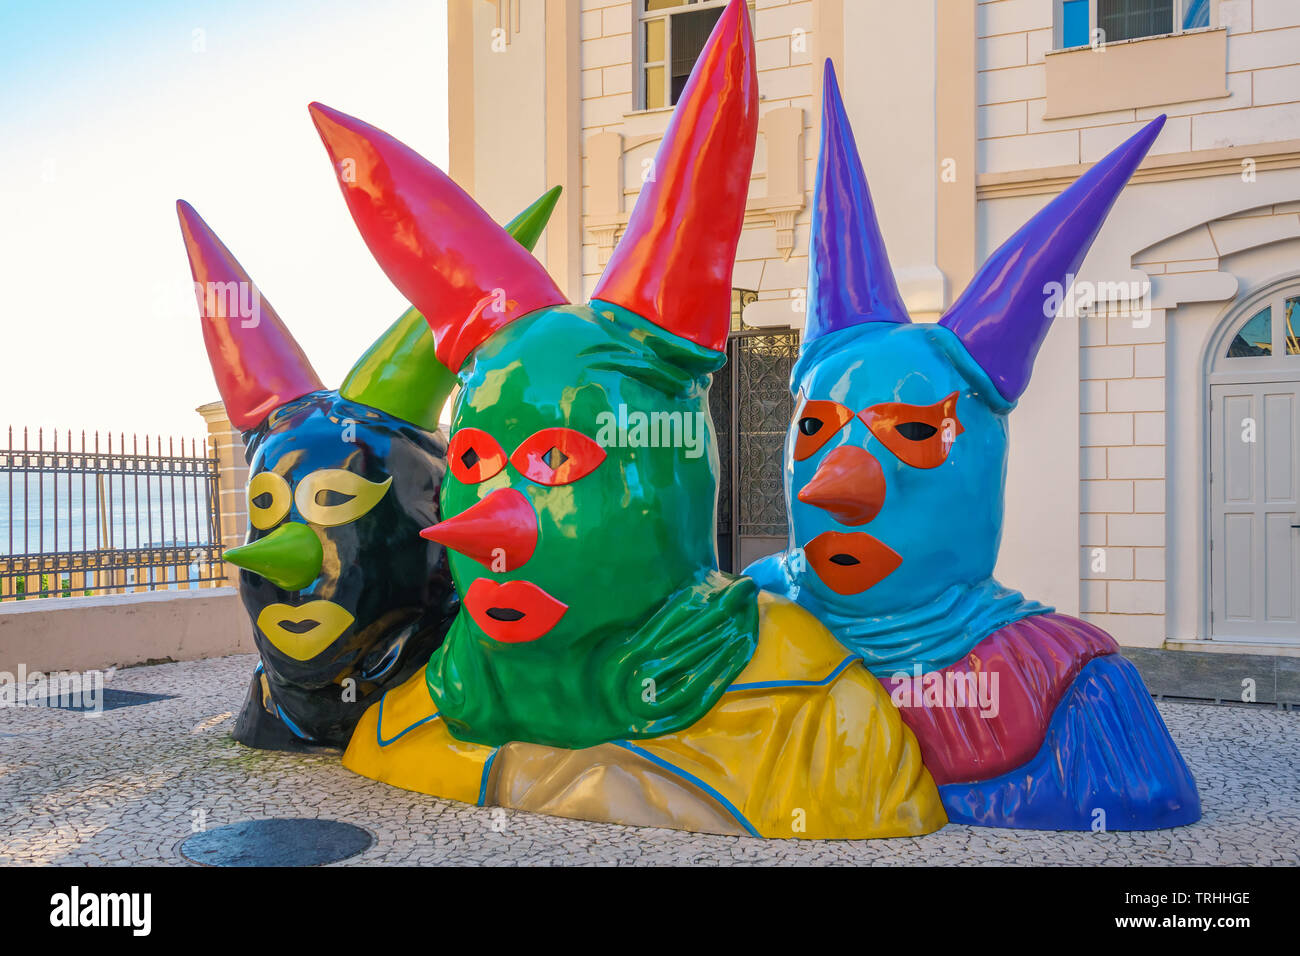 Carnaval masqué figure sculptures en face de la Casa do Carnaval (Carnival) Maison de la vieille ville de Salvador de Bahia au Brésil Banque D'Images